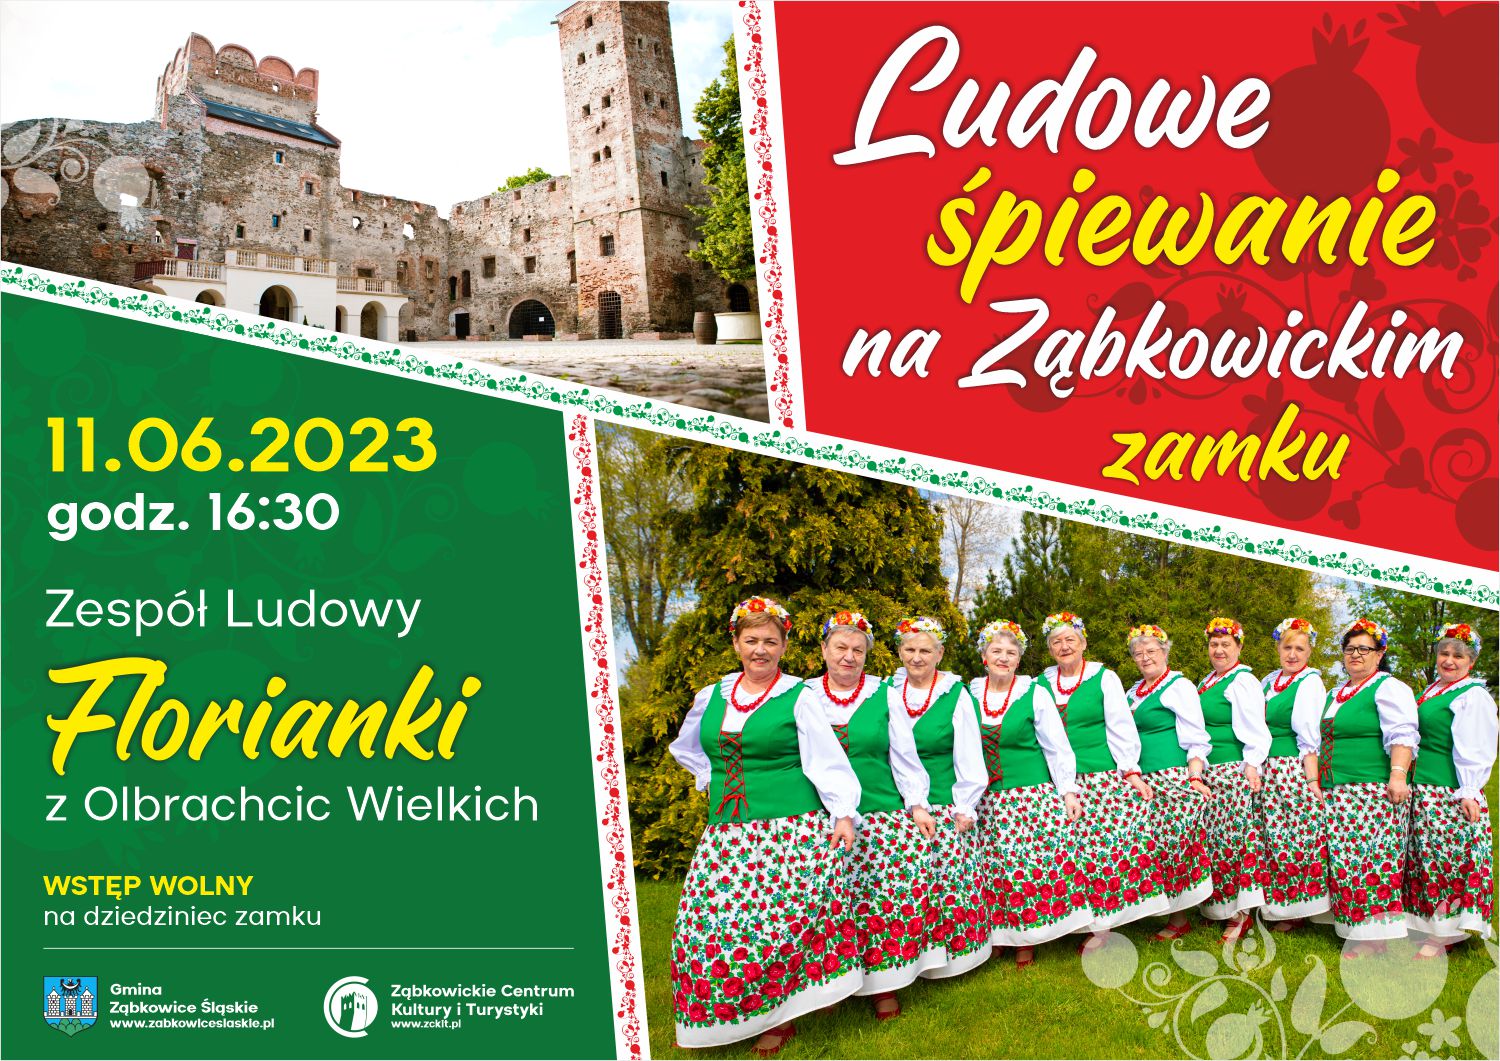 Plakat informacyjny o Ludowym śpiewaniu na Ząbkowickim zamku 11.06.2023 o godzinie 16:30